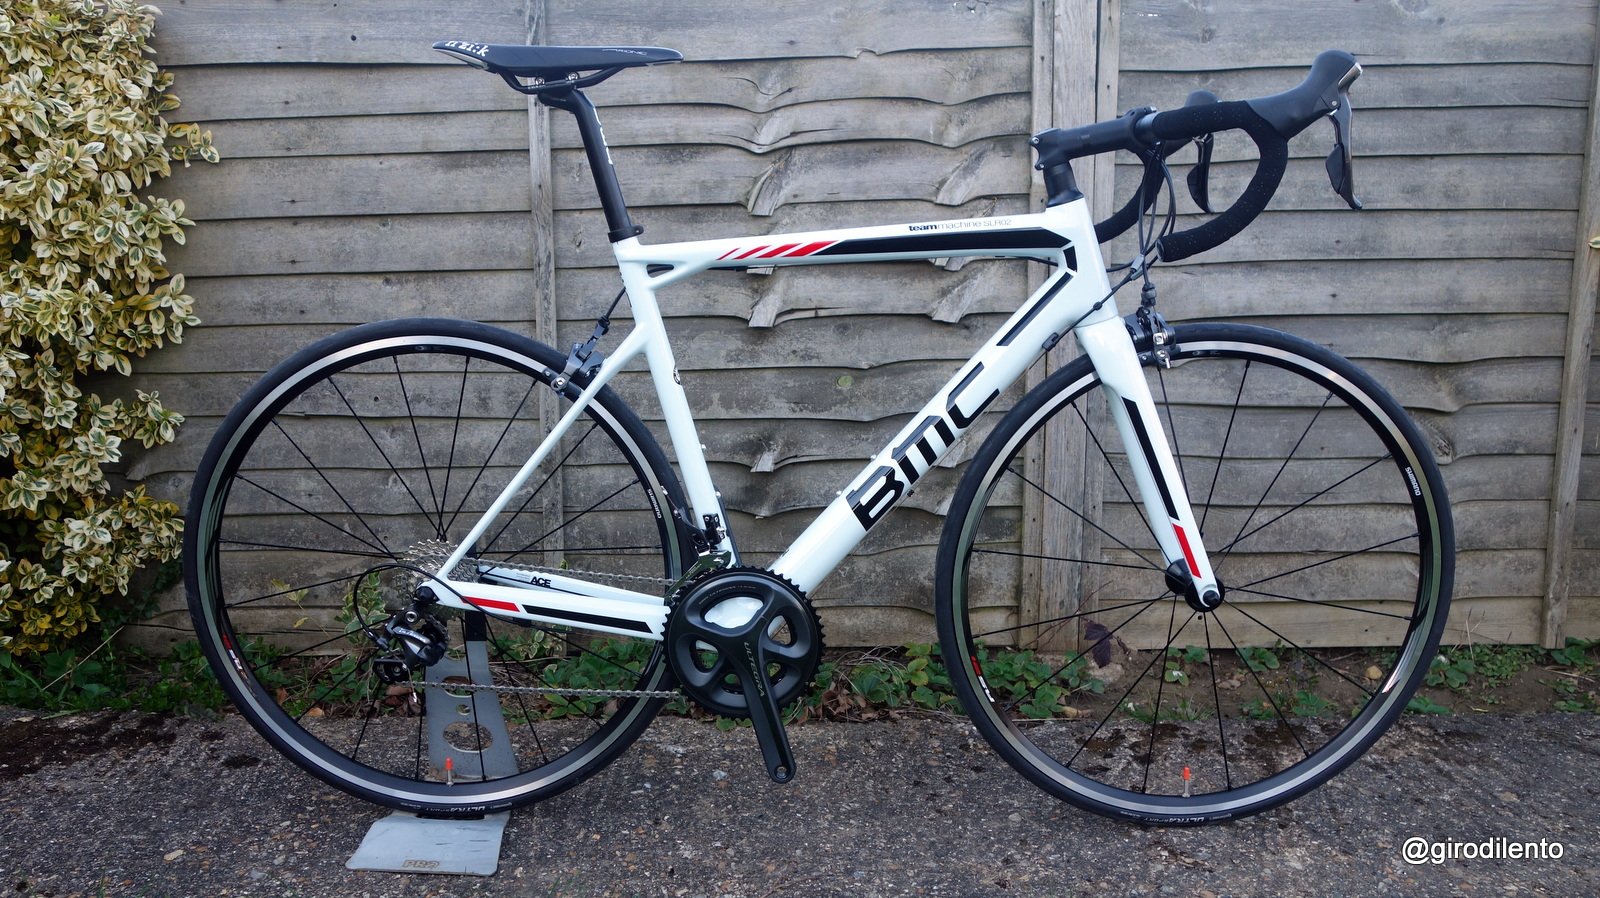 自転車BMC SLR02 2015 54